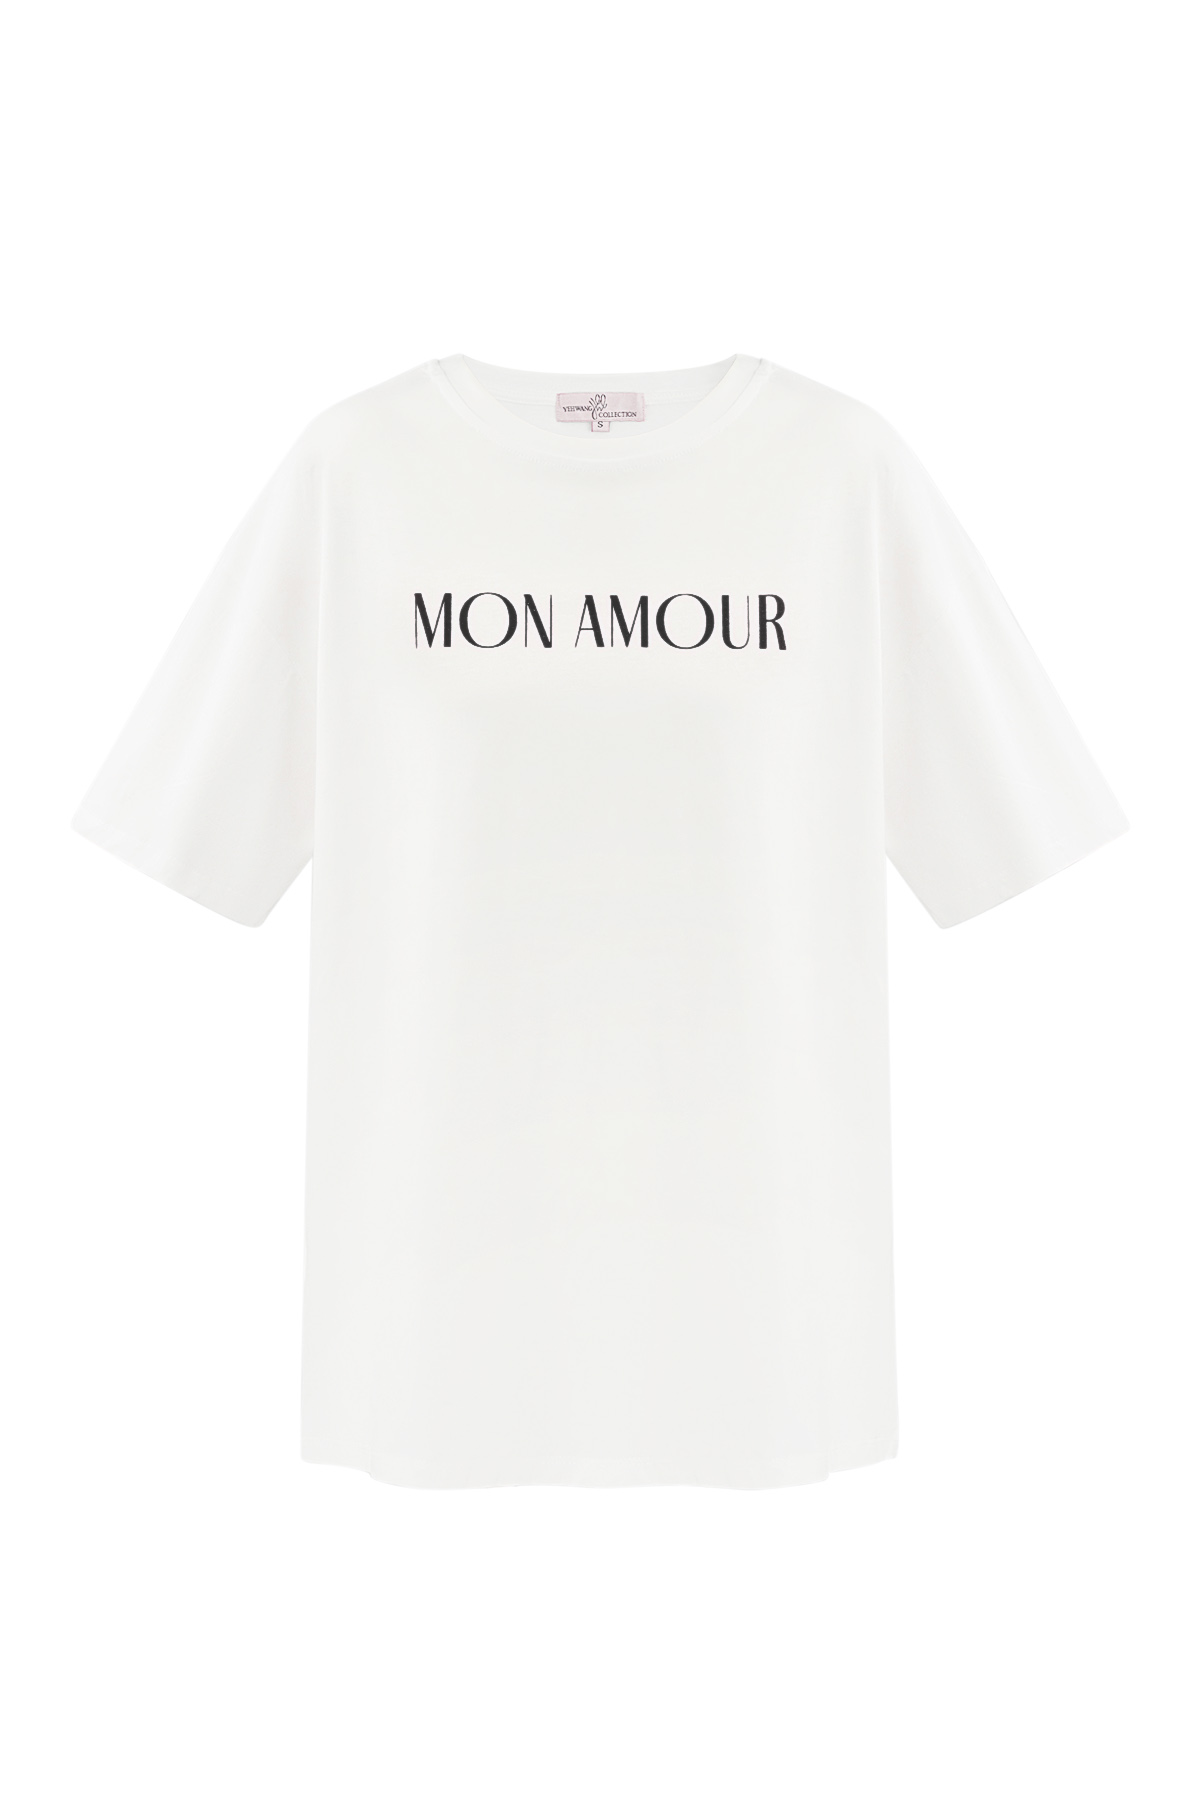 T-shirt mon amour - siyah beyaz h5 